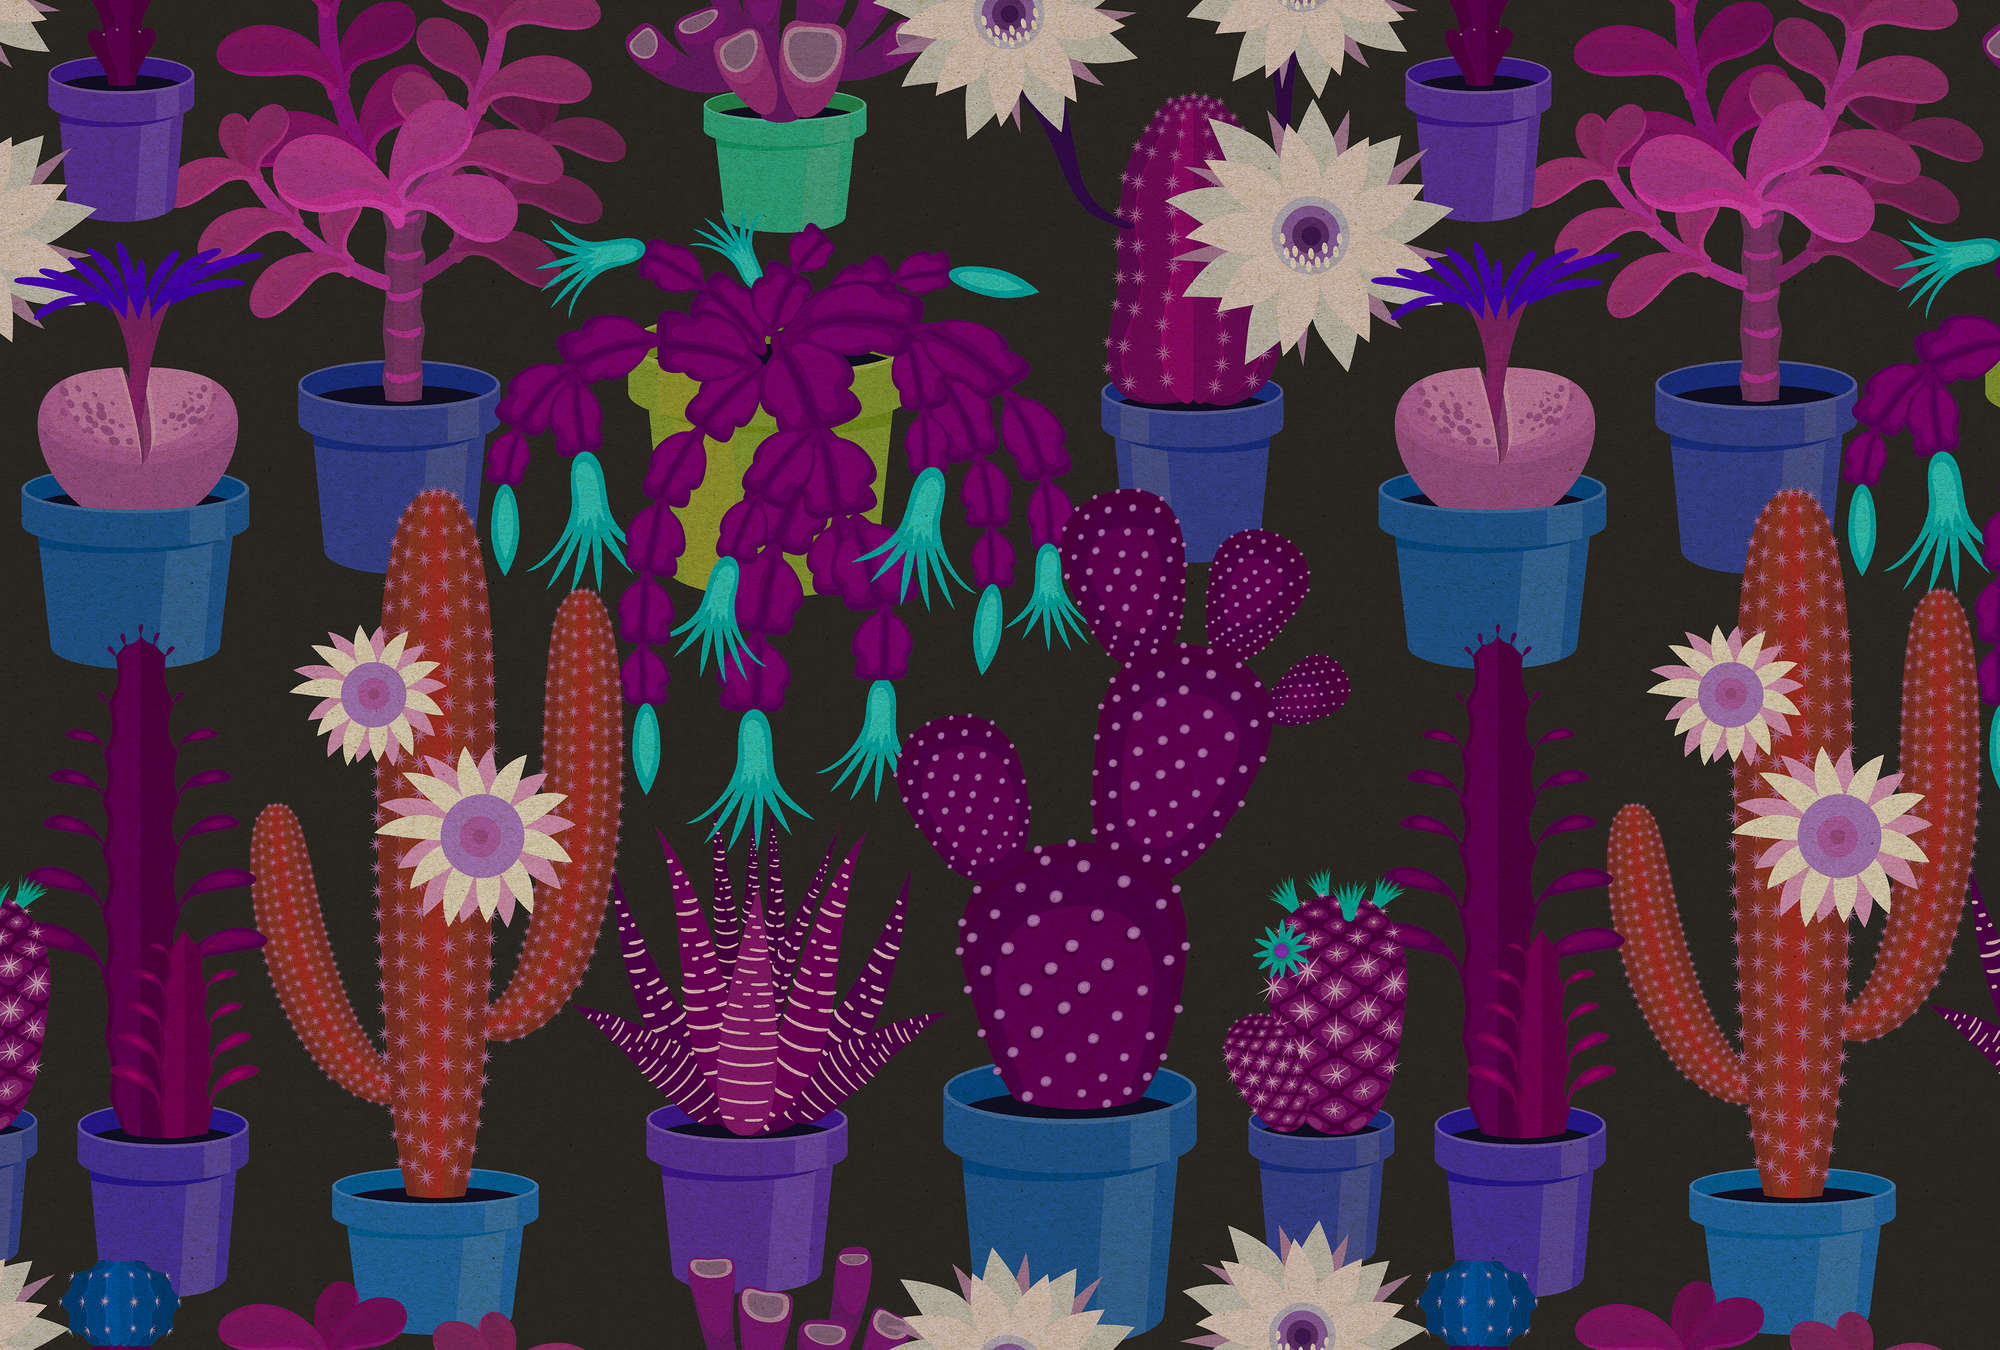             Cactus garden 1 - Fototapete in Pappe Struktur mit bunten Kakteen im Comic Stil – Blau, Orange | Struktur Vlies
        